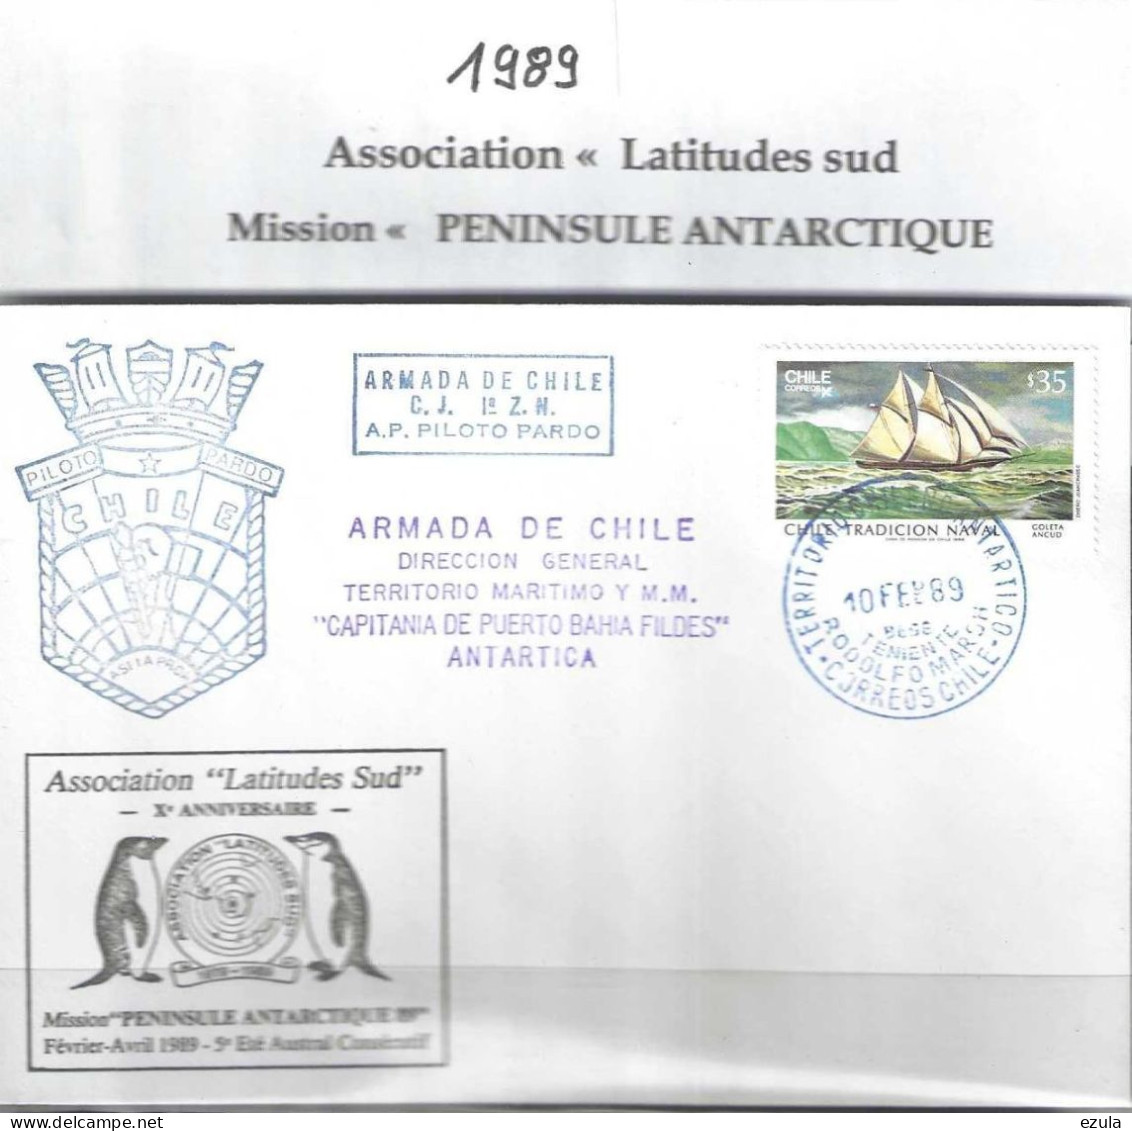 Chilie  -Association Latitude Sud  Mission Péninsule Antarctique 89 - Année Polaire Internationale